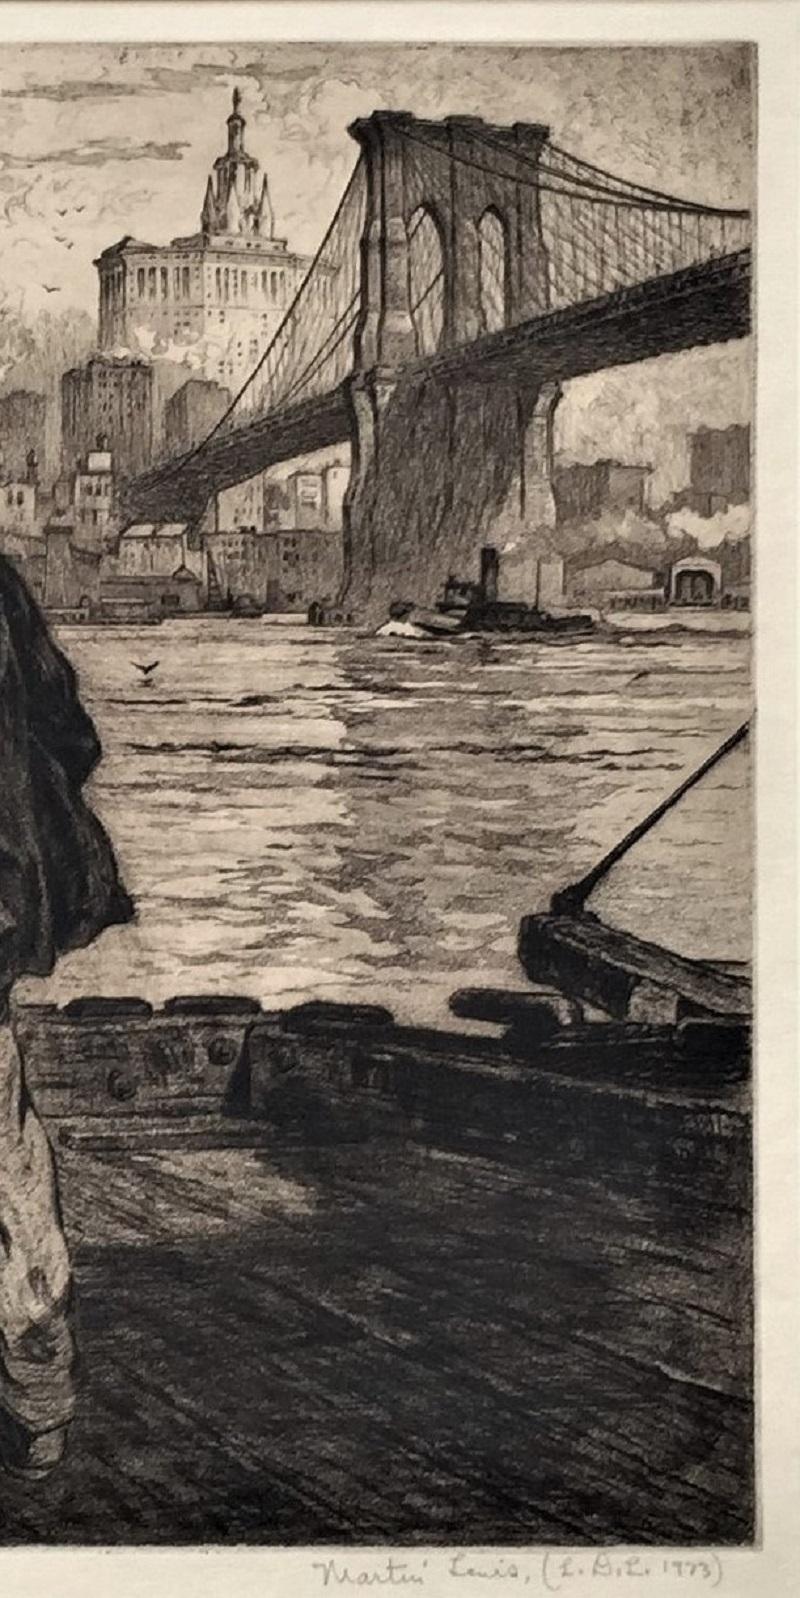 Workers du chantier naval sous le pont de Brooklyn - Modernisme américain Print par Martin Lewis